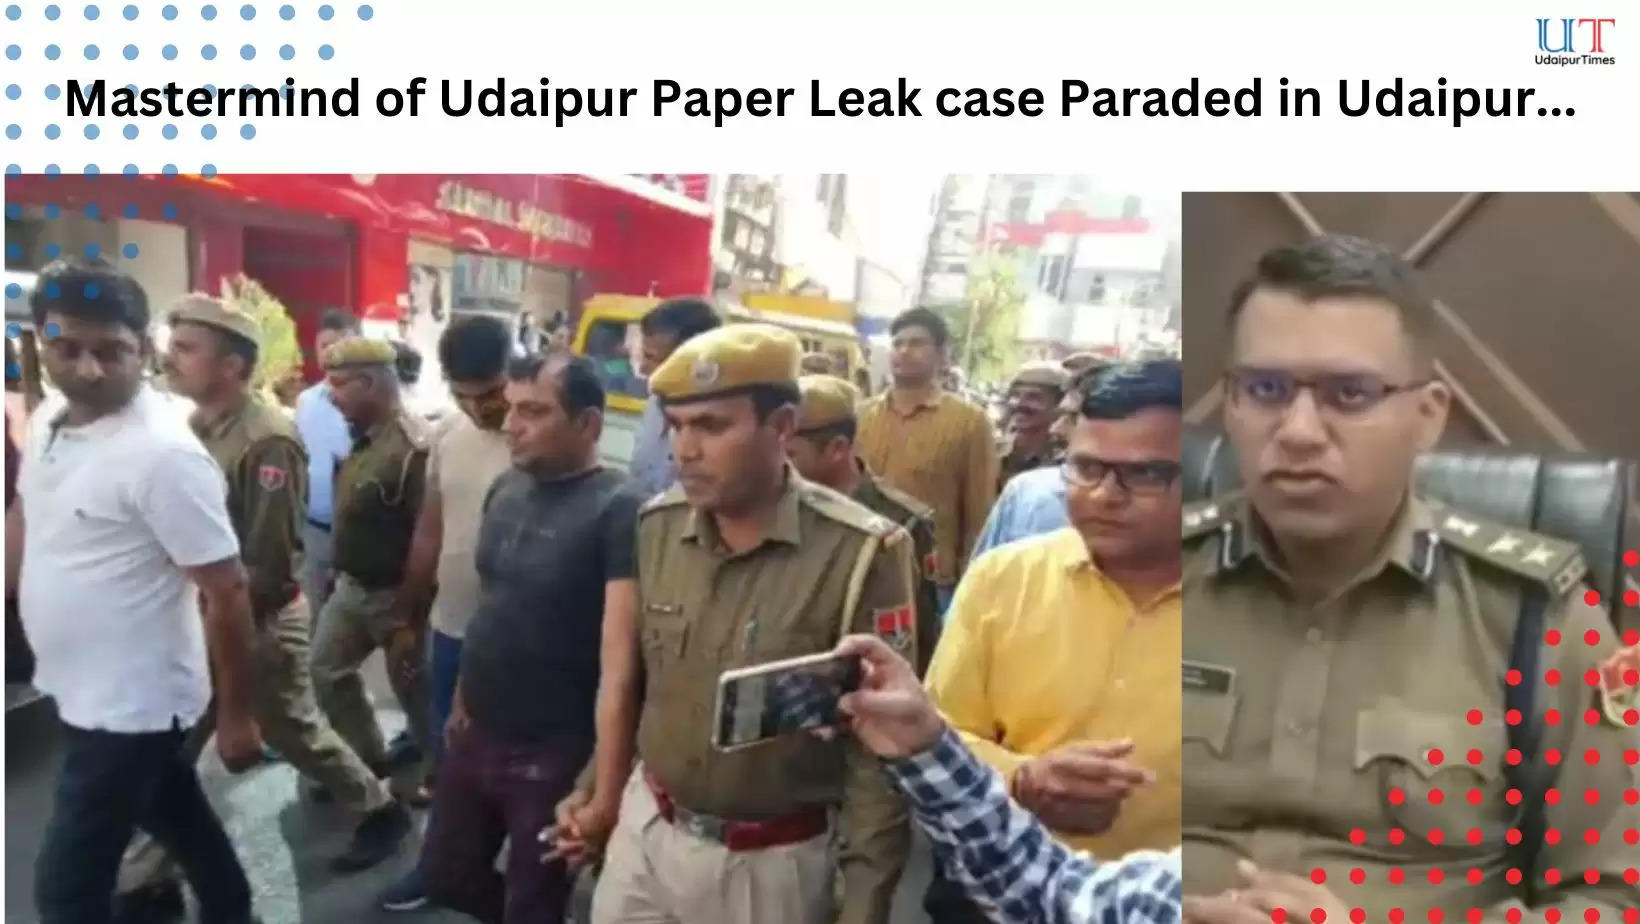 Udaipur Paper Leak Case Accused arrested parade through Udaipur Roads